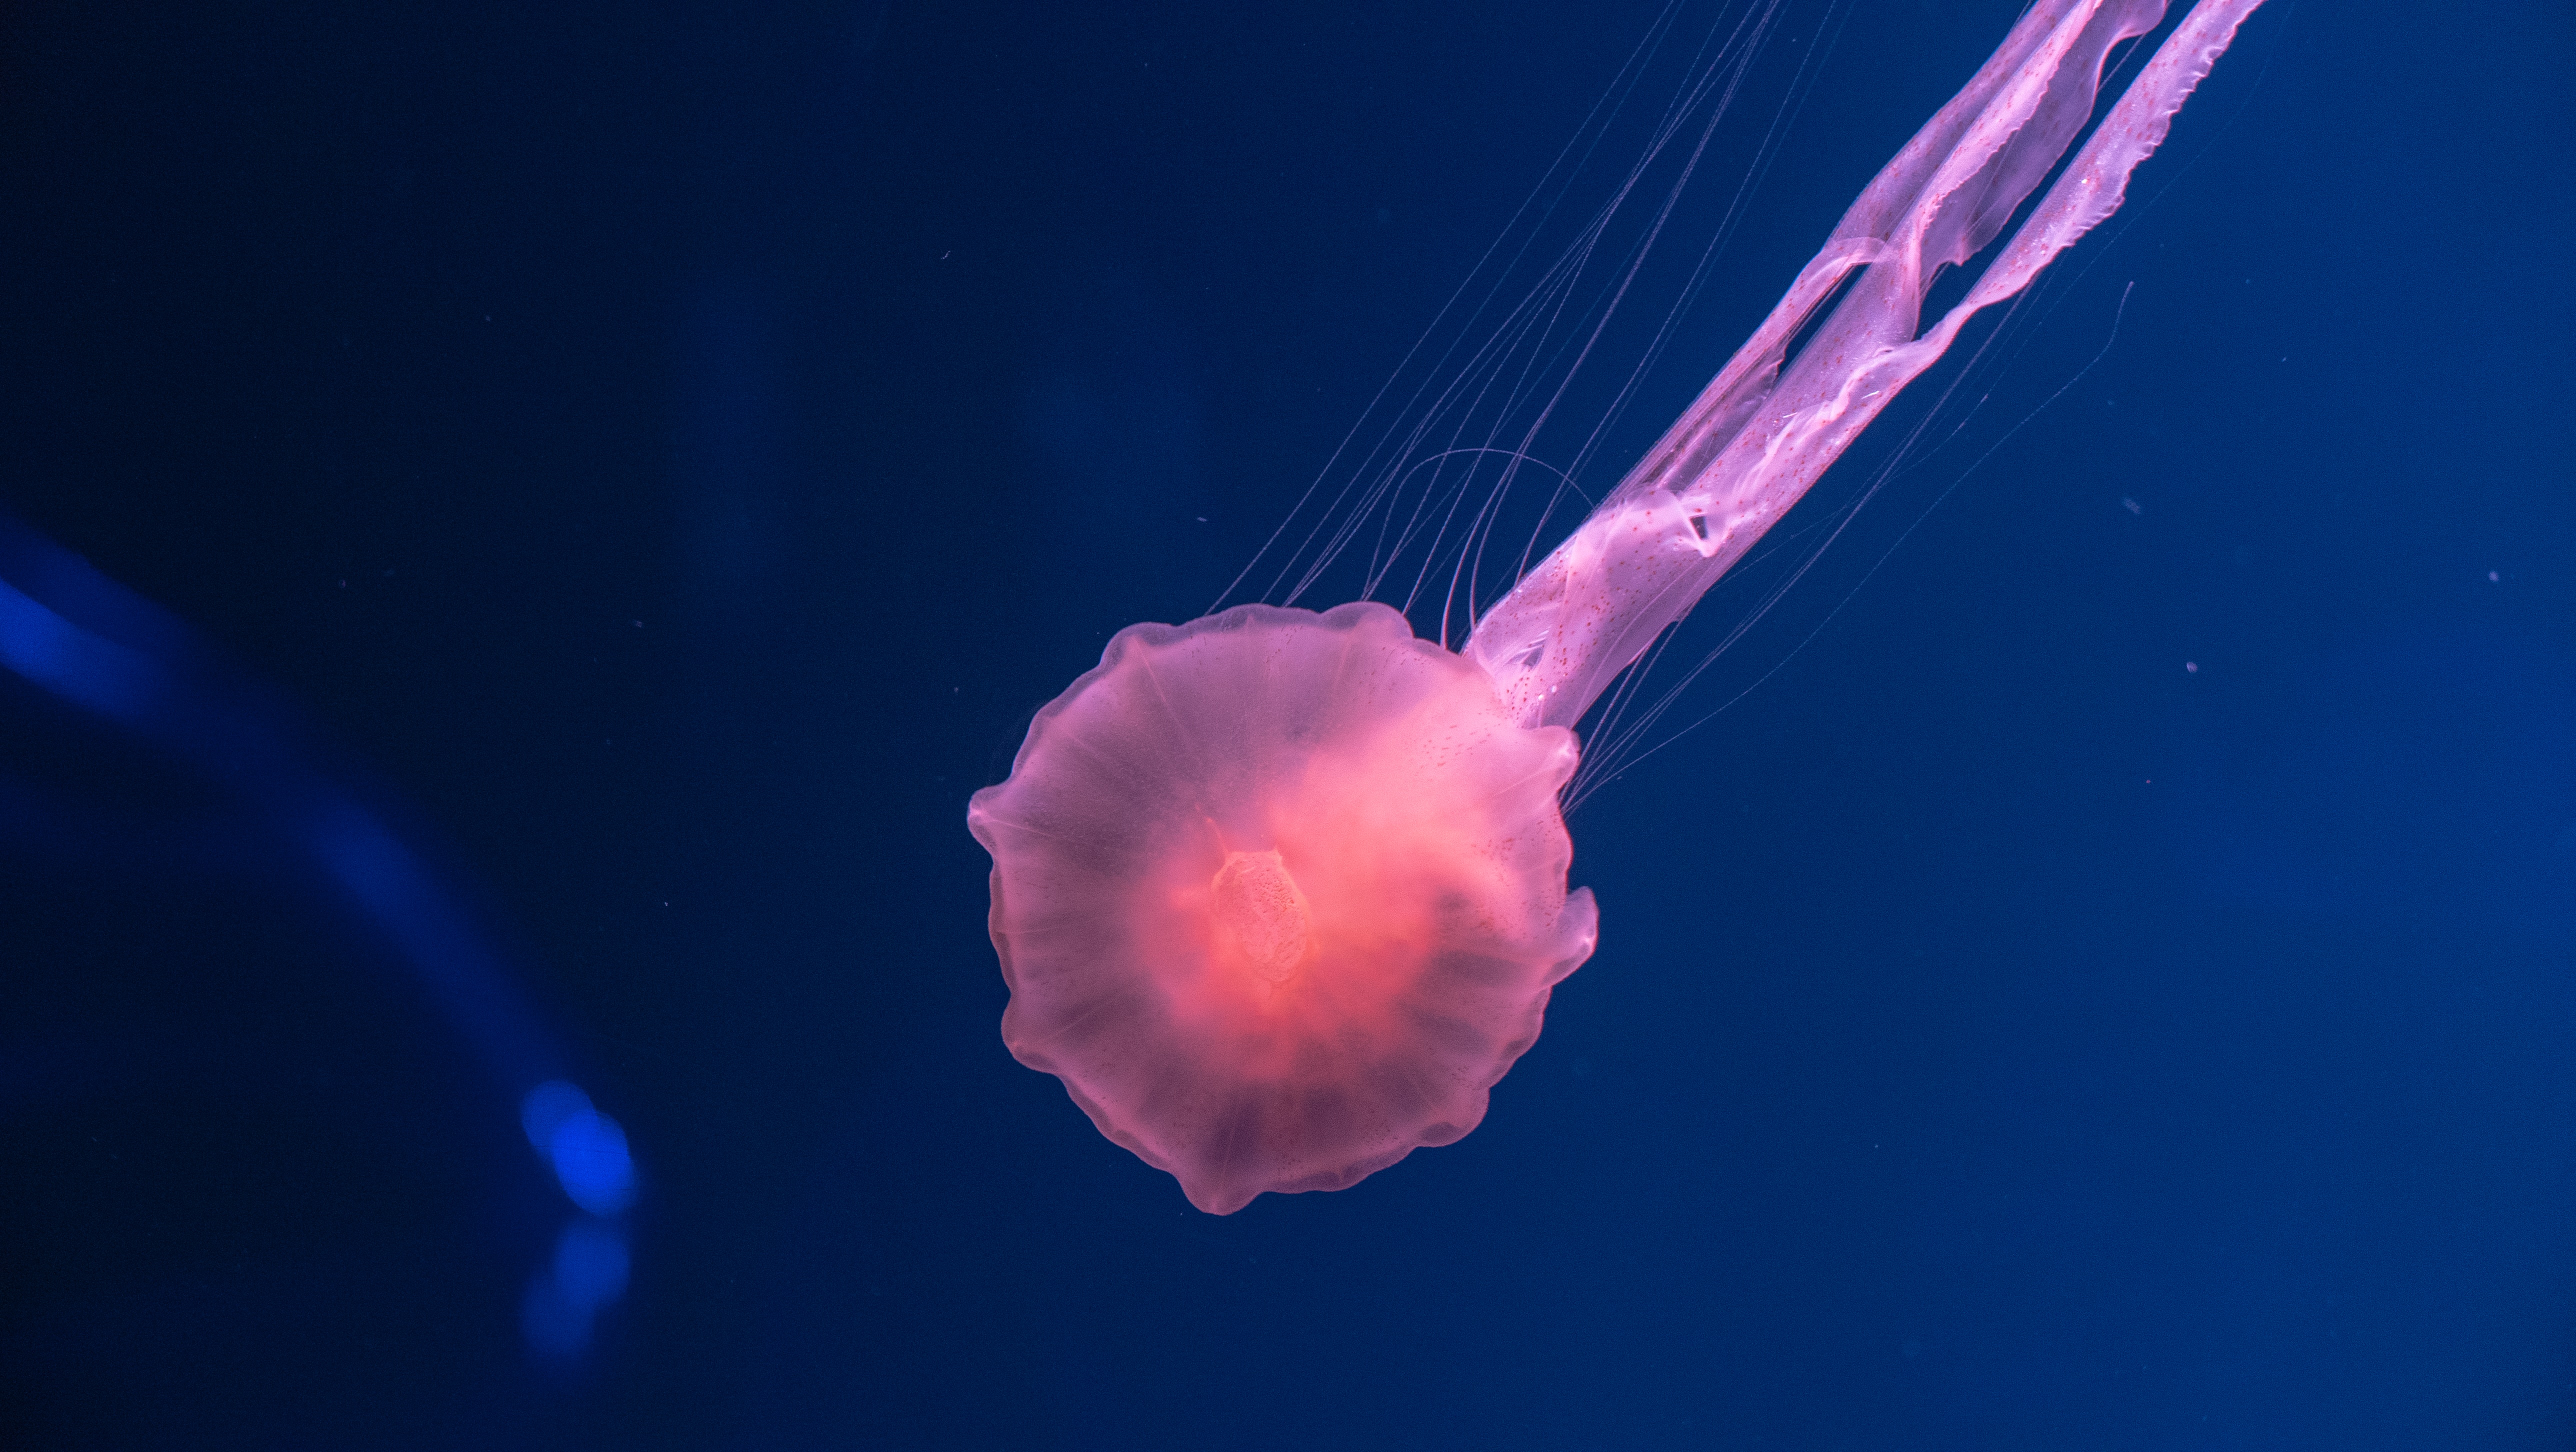 jellyfish underwater 4k 1602358828 - Jellyfish Underwater 4k - Jellyfish Underwater 4k wallpapers